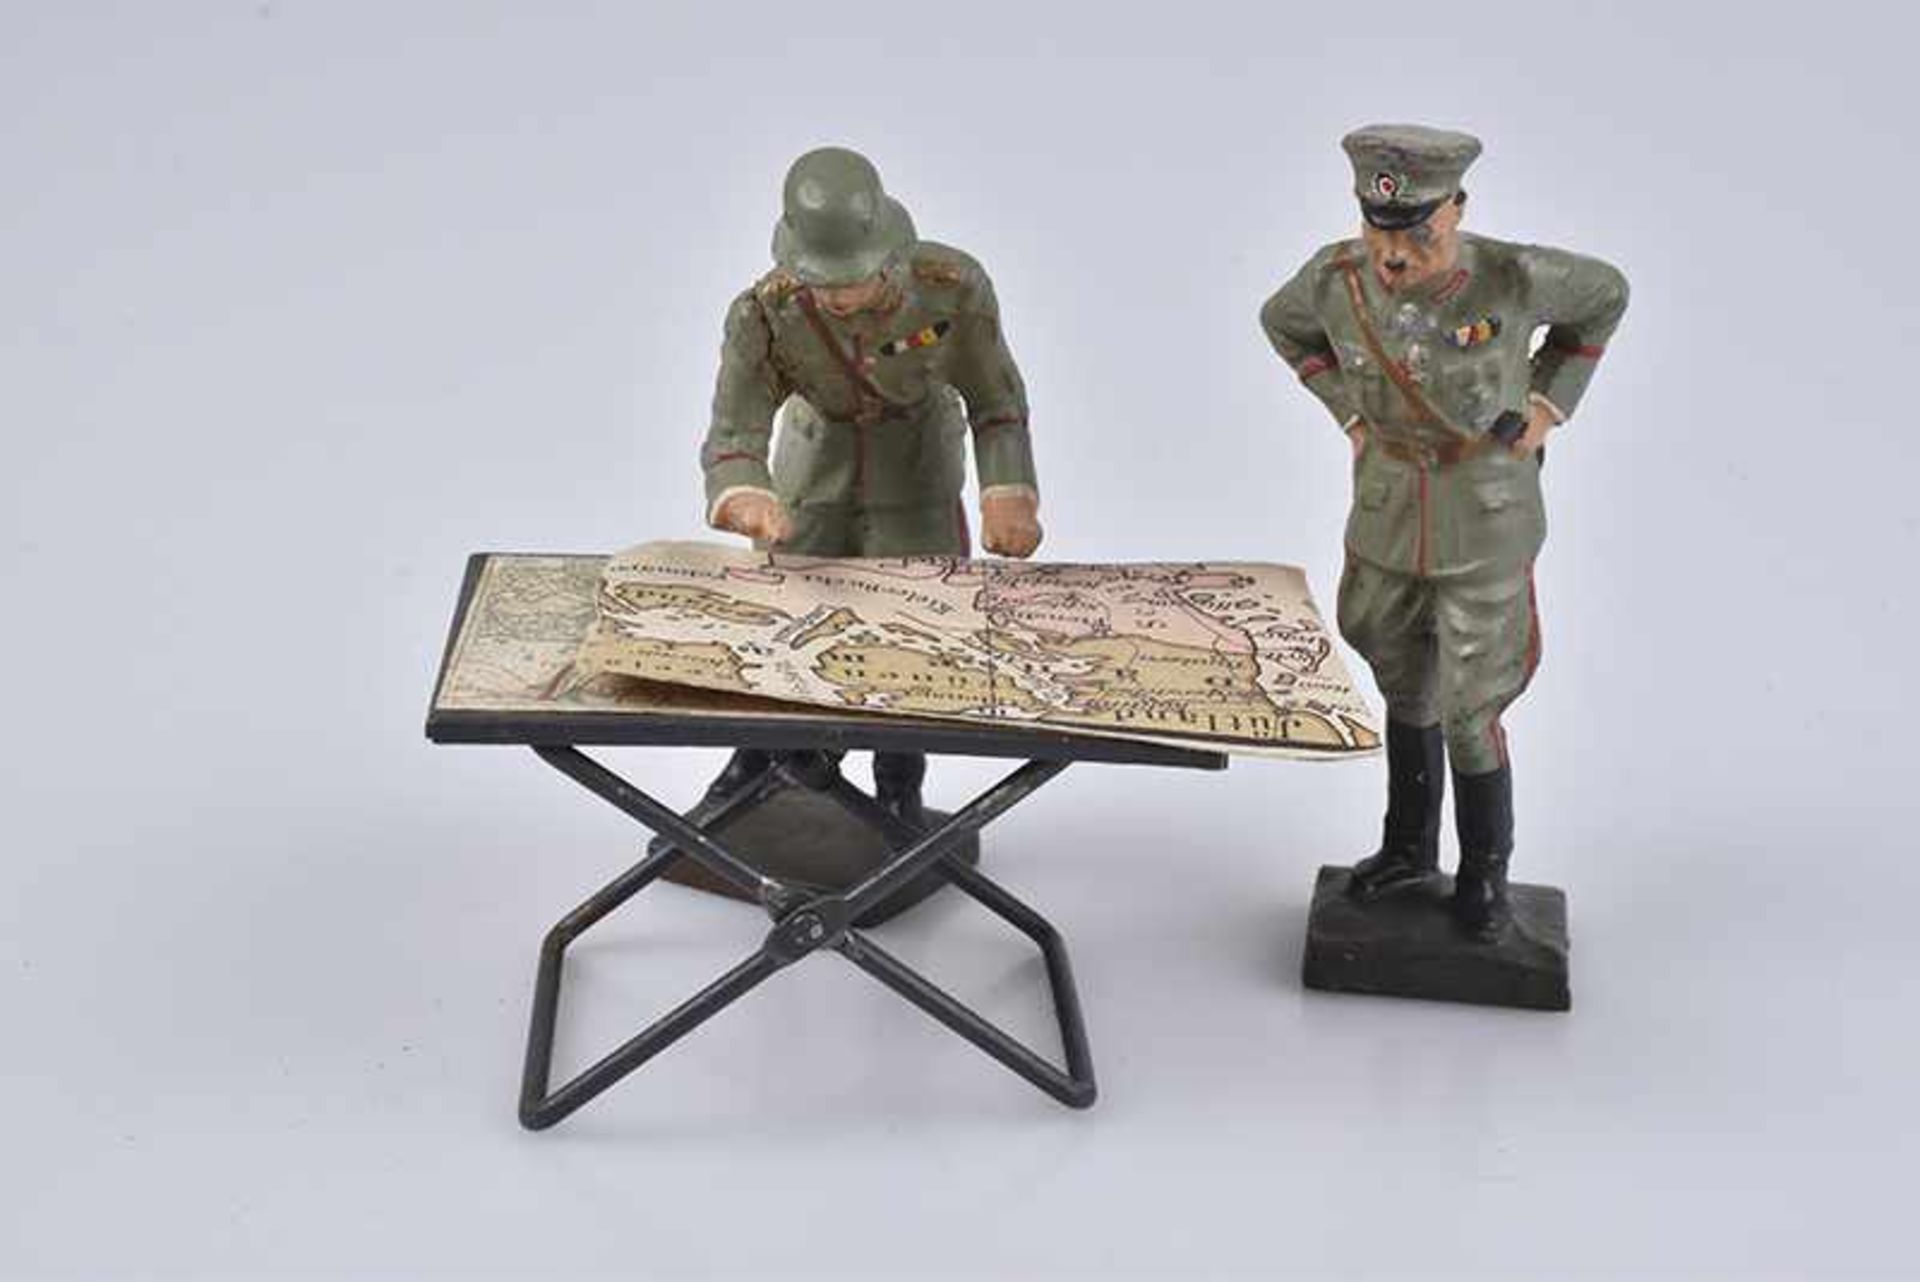 LINEOL Stabsoffizier und General am Kartentisch, M.h., 7,5 cm, Blech-Tisch, Korrosionsspuren, lose